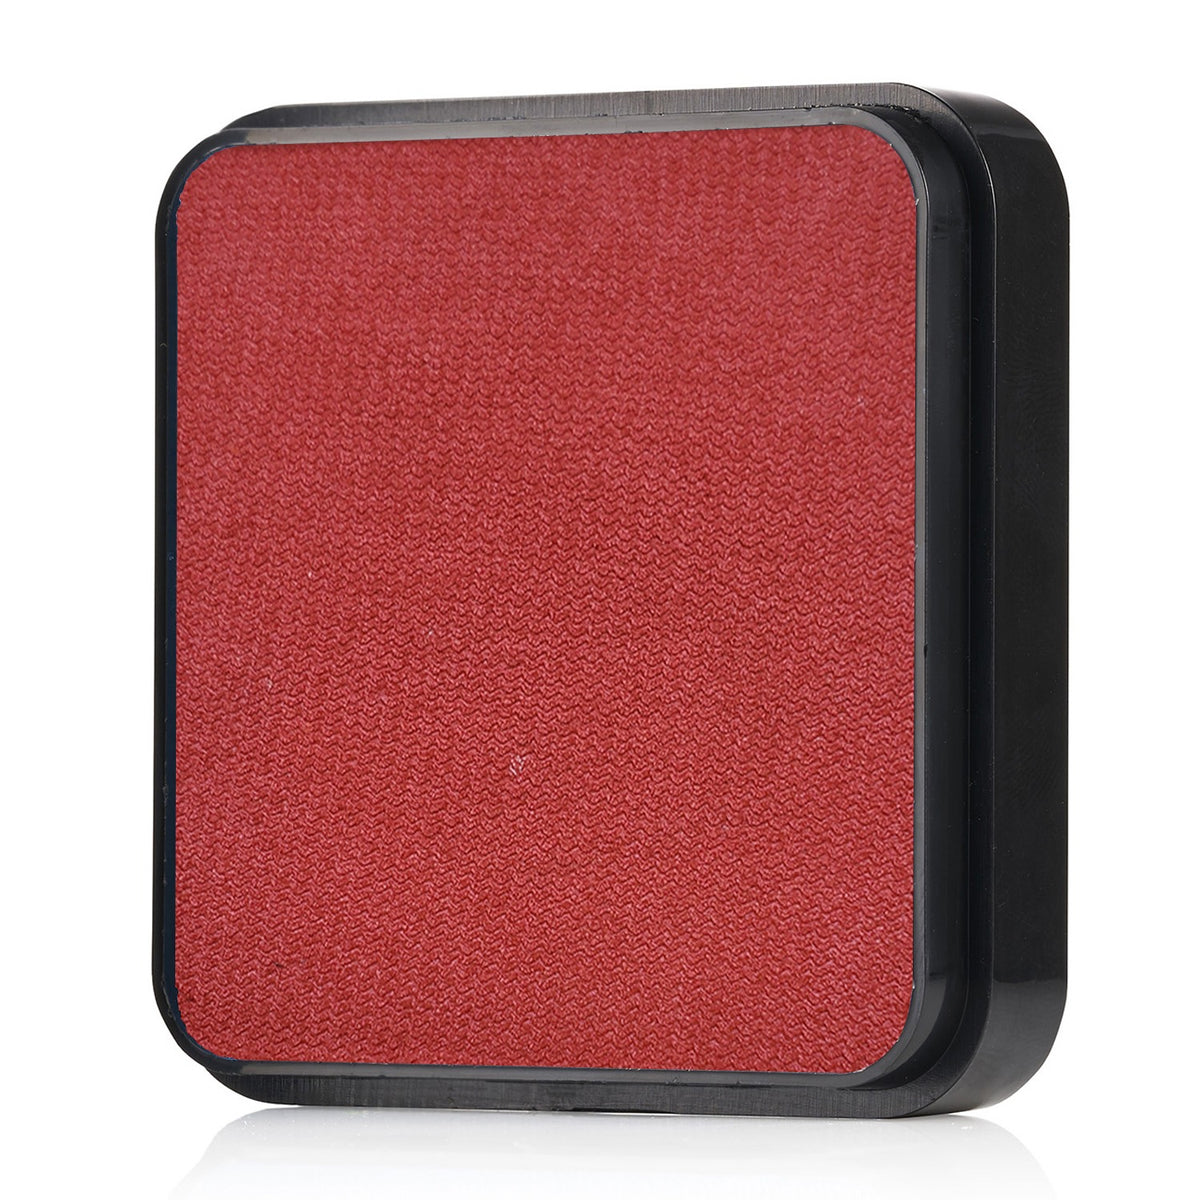 Kraze FX Face Paint - Metallic Red (25 gm)